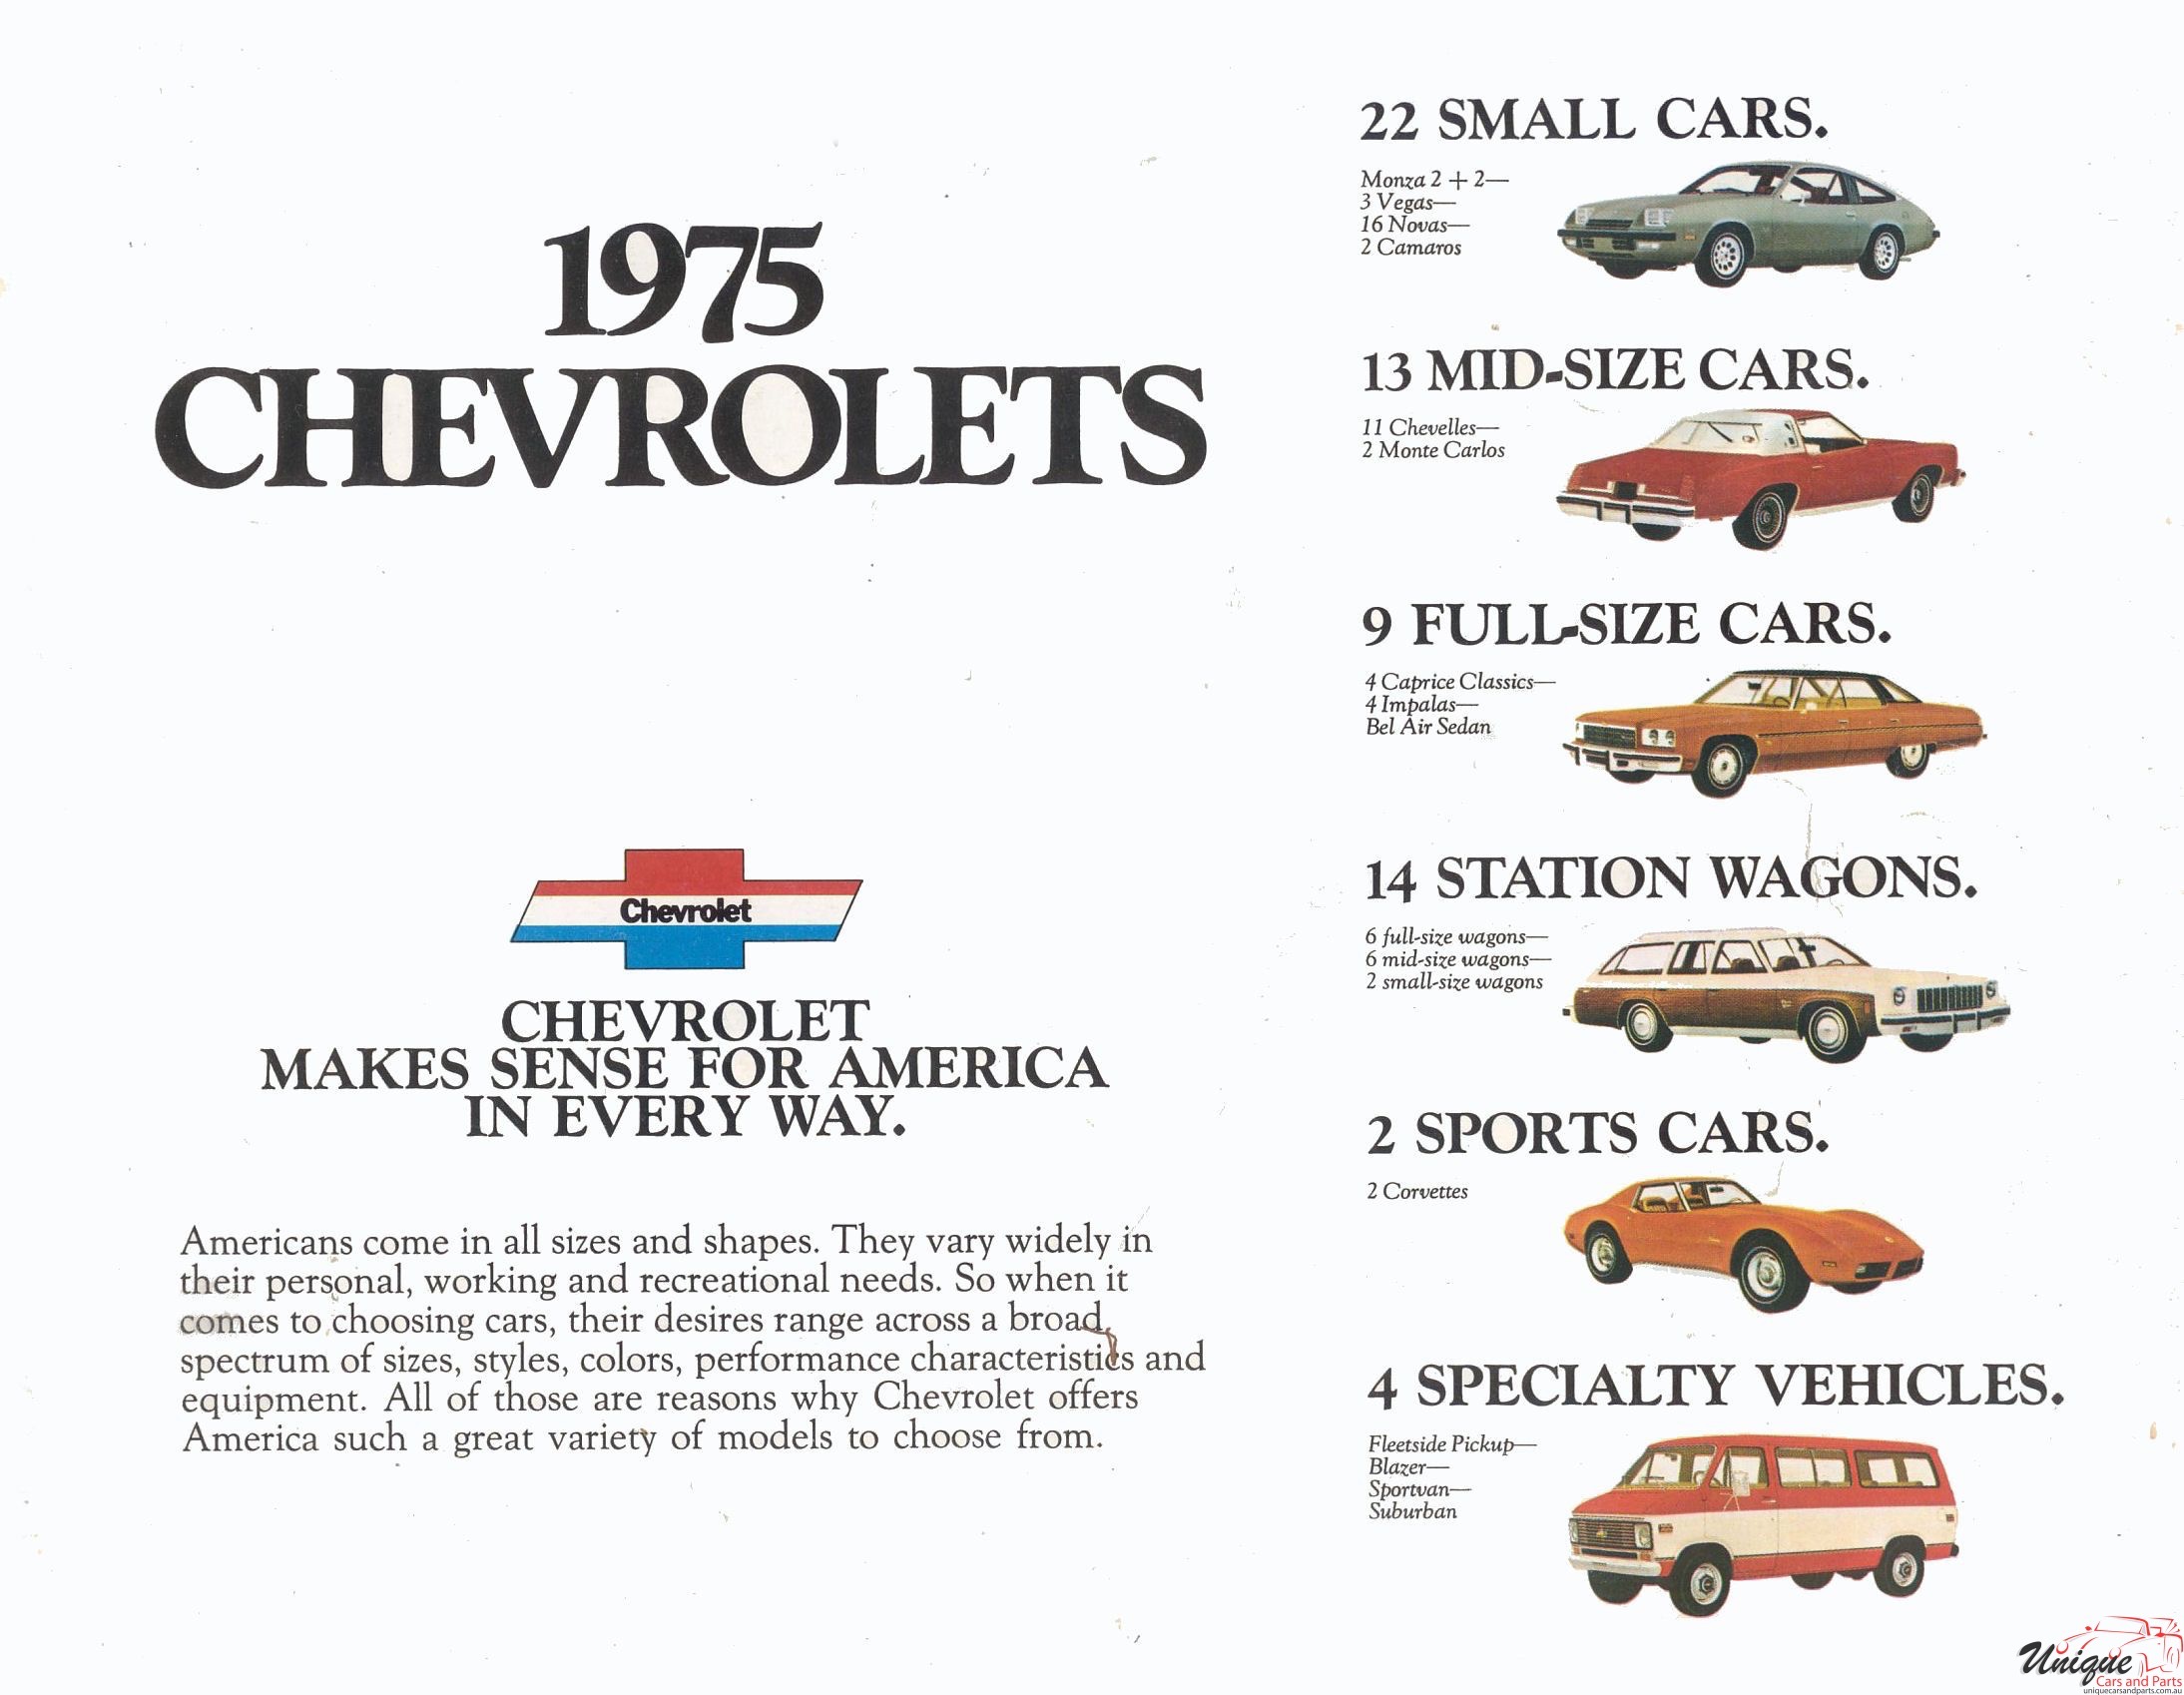 1975 Chevrolet Full Line Brochure